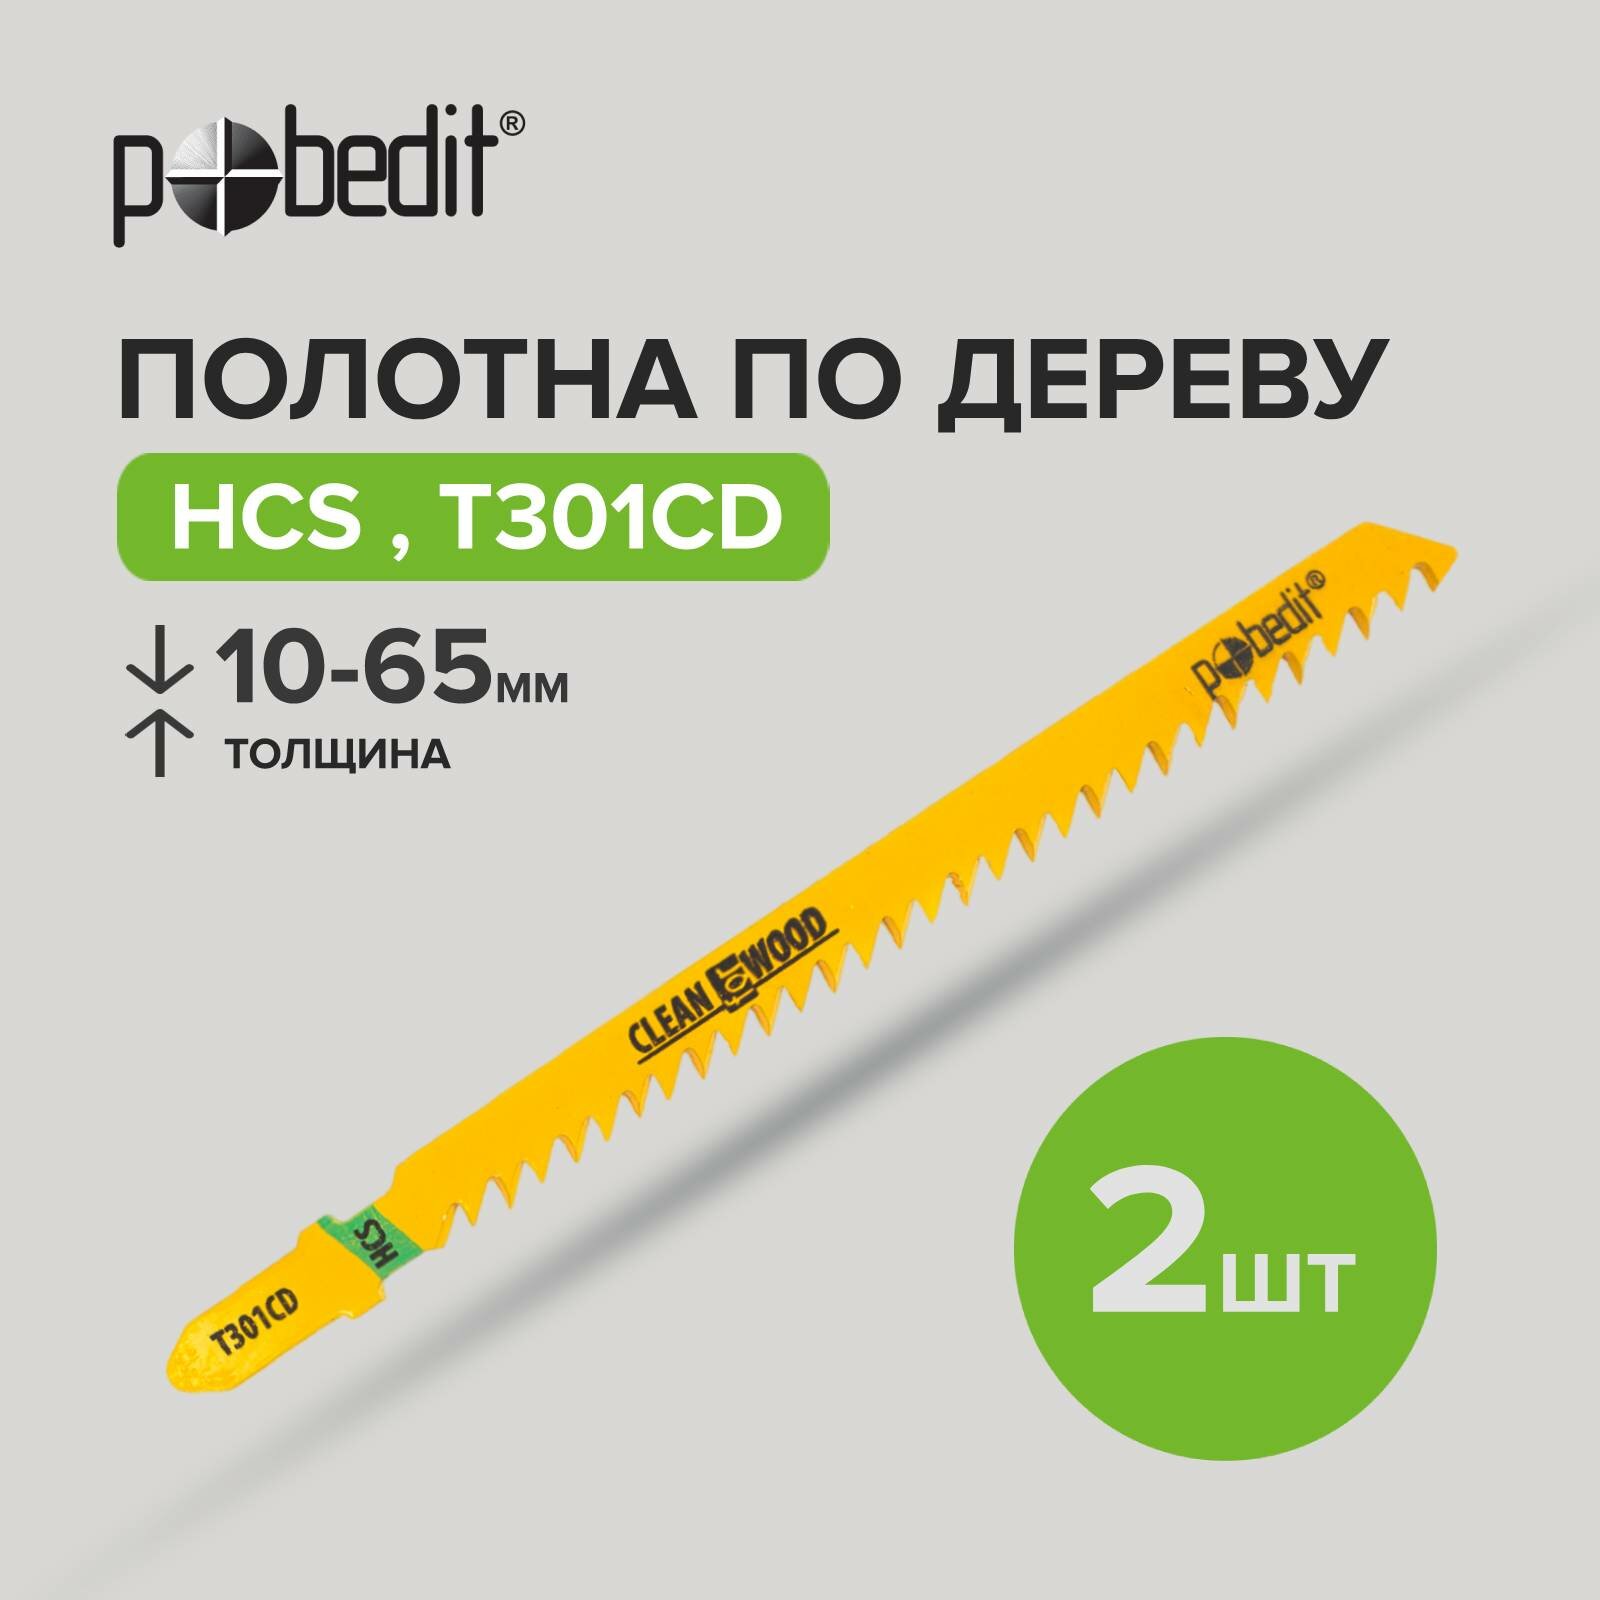 Полотна для электролобзика T301CD HCS Pobedit (2шт)